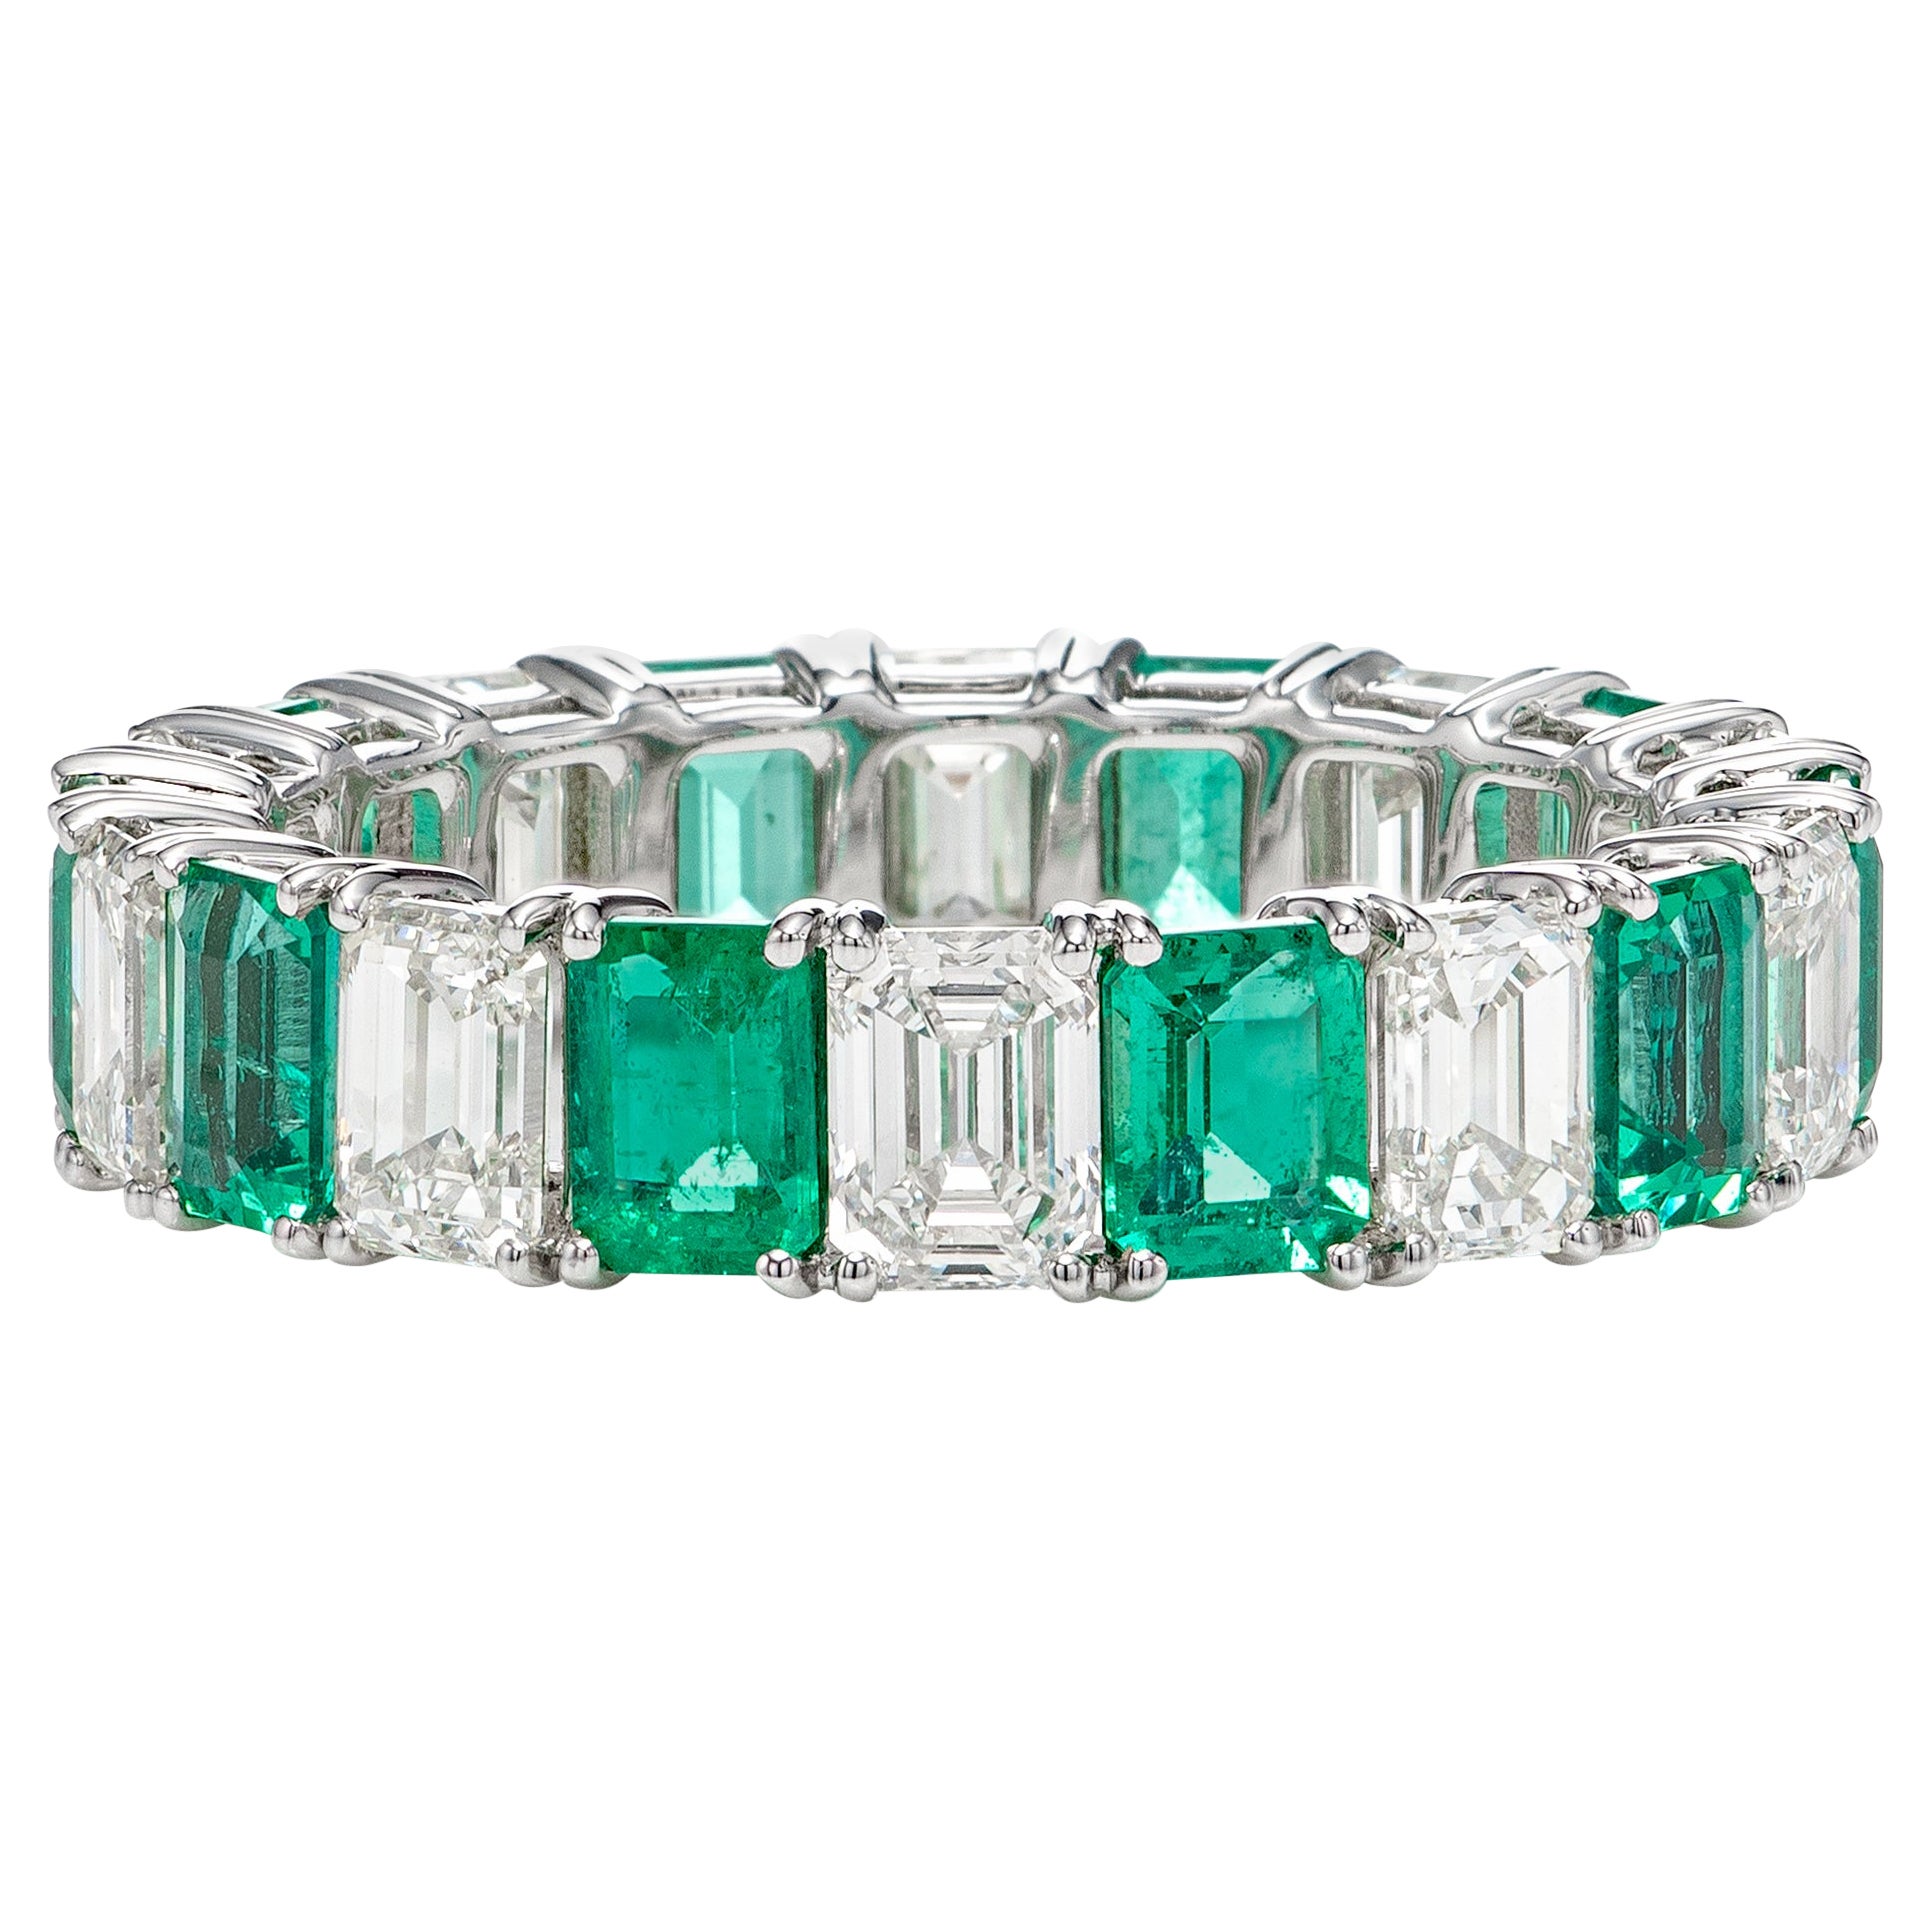 4.23 Carat Zambian Emerald and White Emerald Shape Diamond Eternity Band